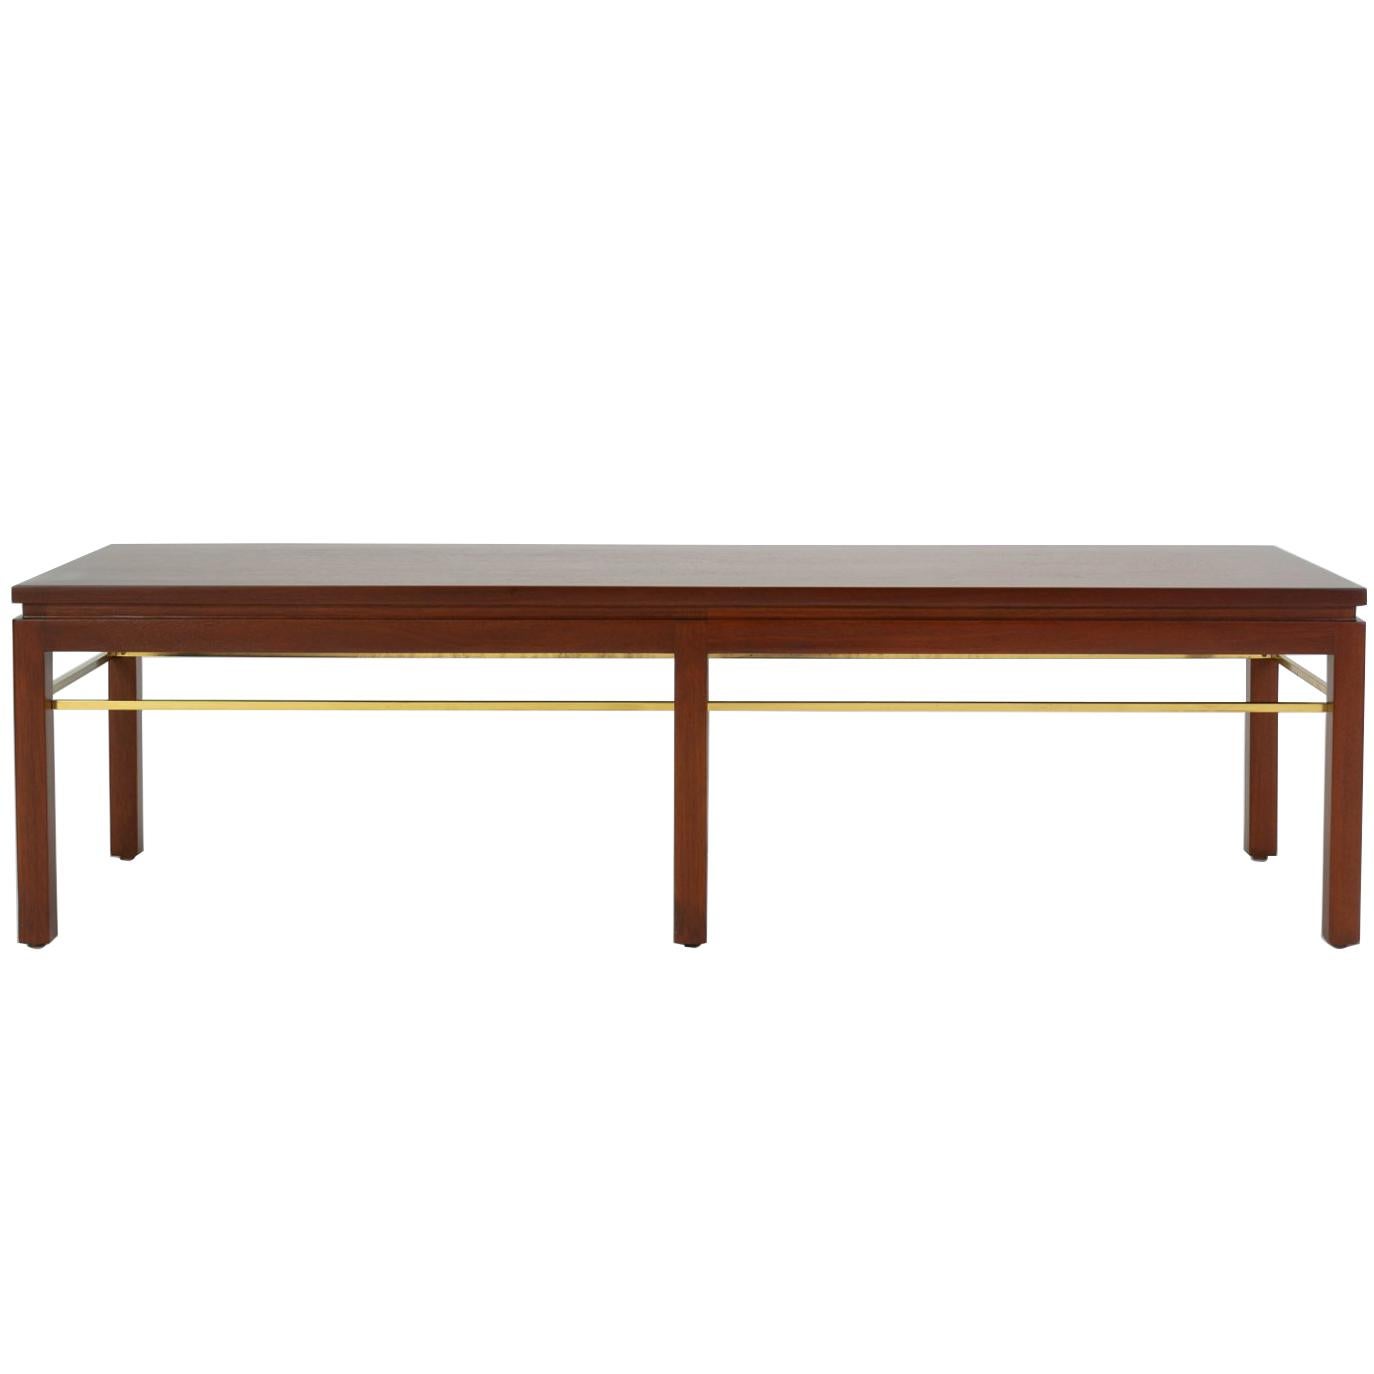 Dunbar Model 313 Coffee Table or Bench by Edward Wormley